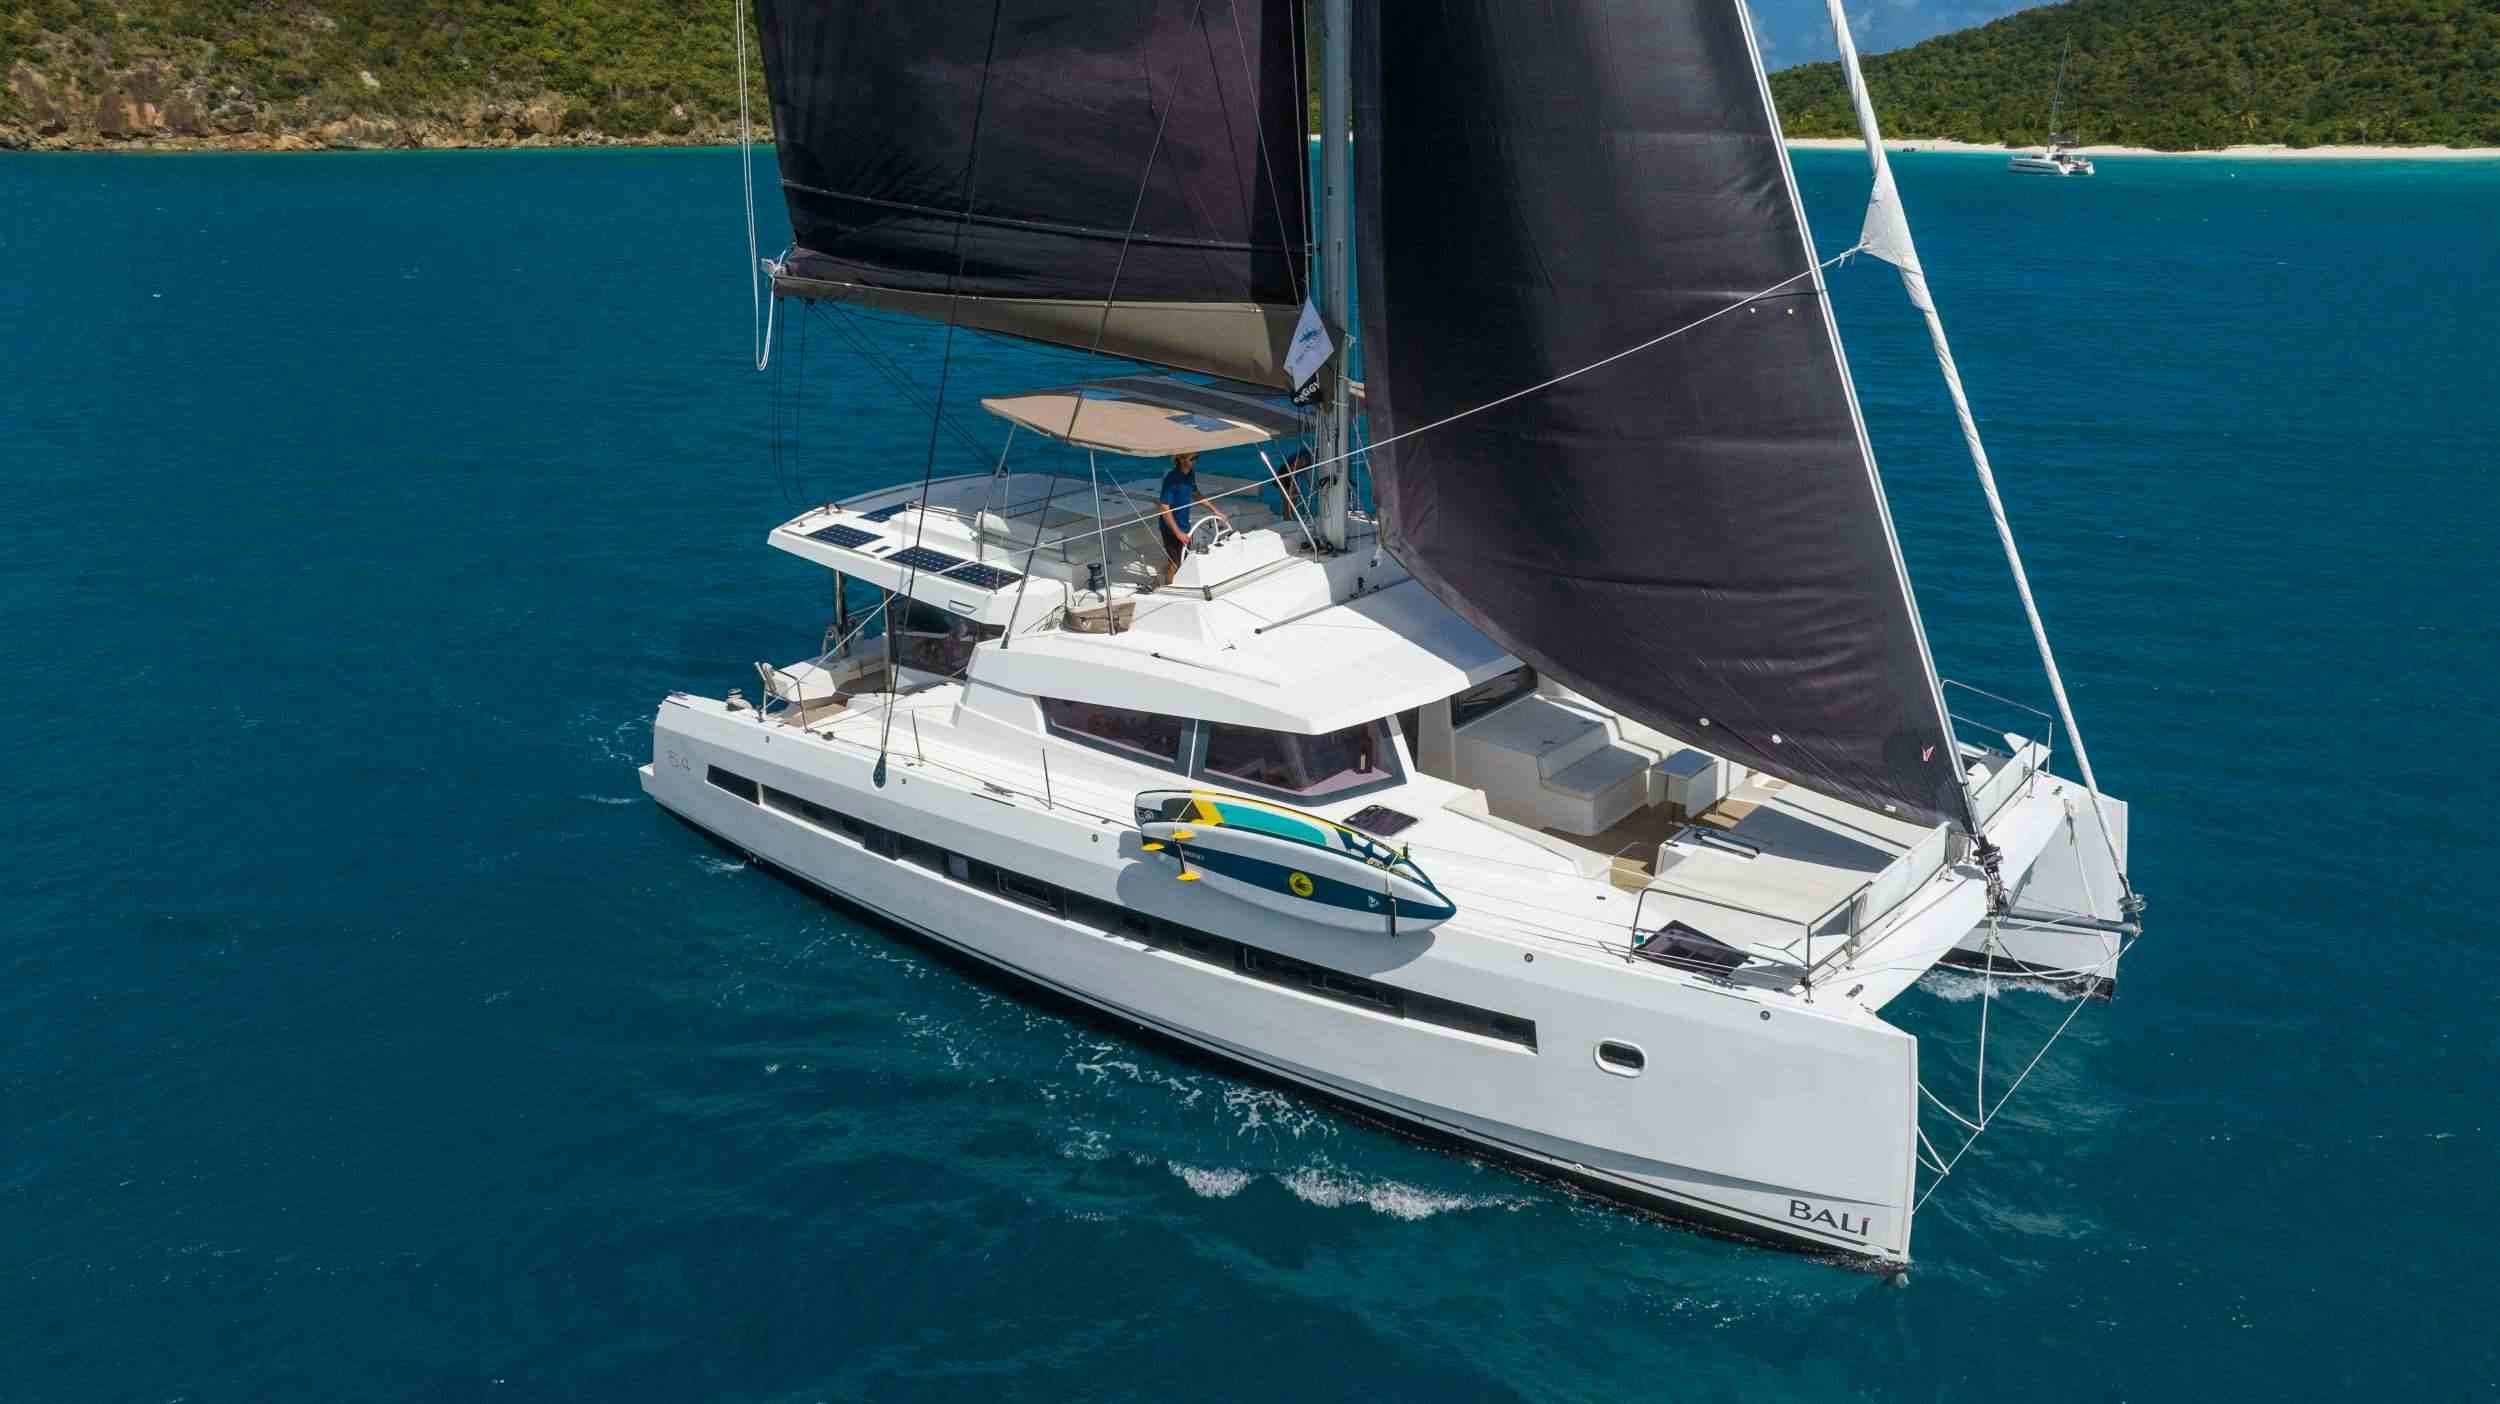 SUN DAZE 5.4 - Catamaran charter Nassau & Boat hire in Caribbean 1